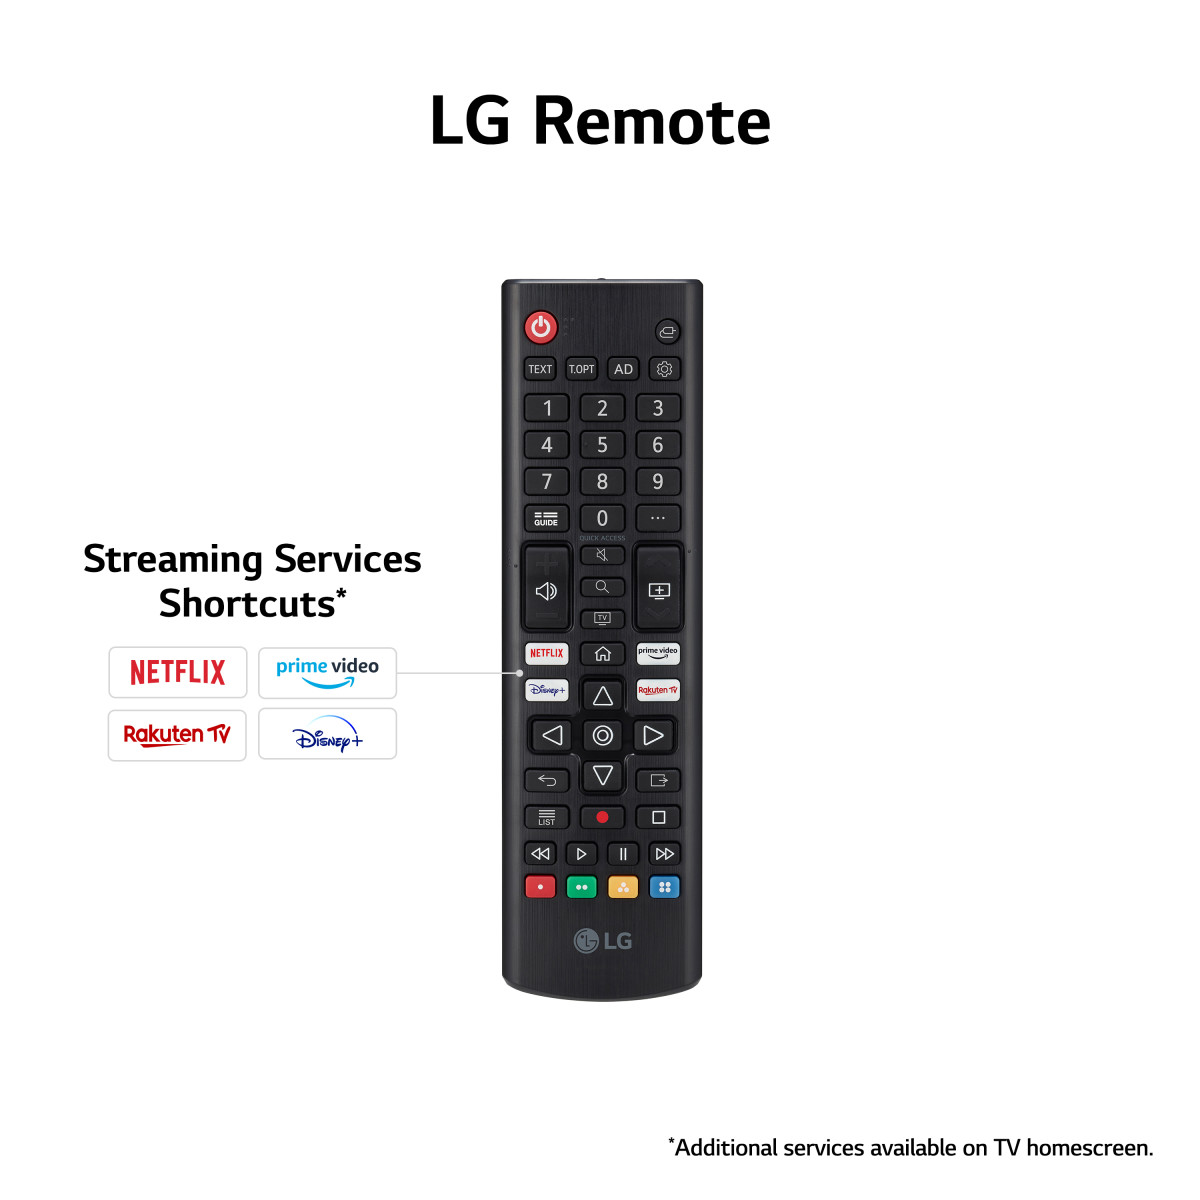 LG LED UR78 43 4K Smart TV